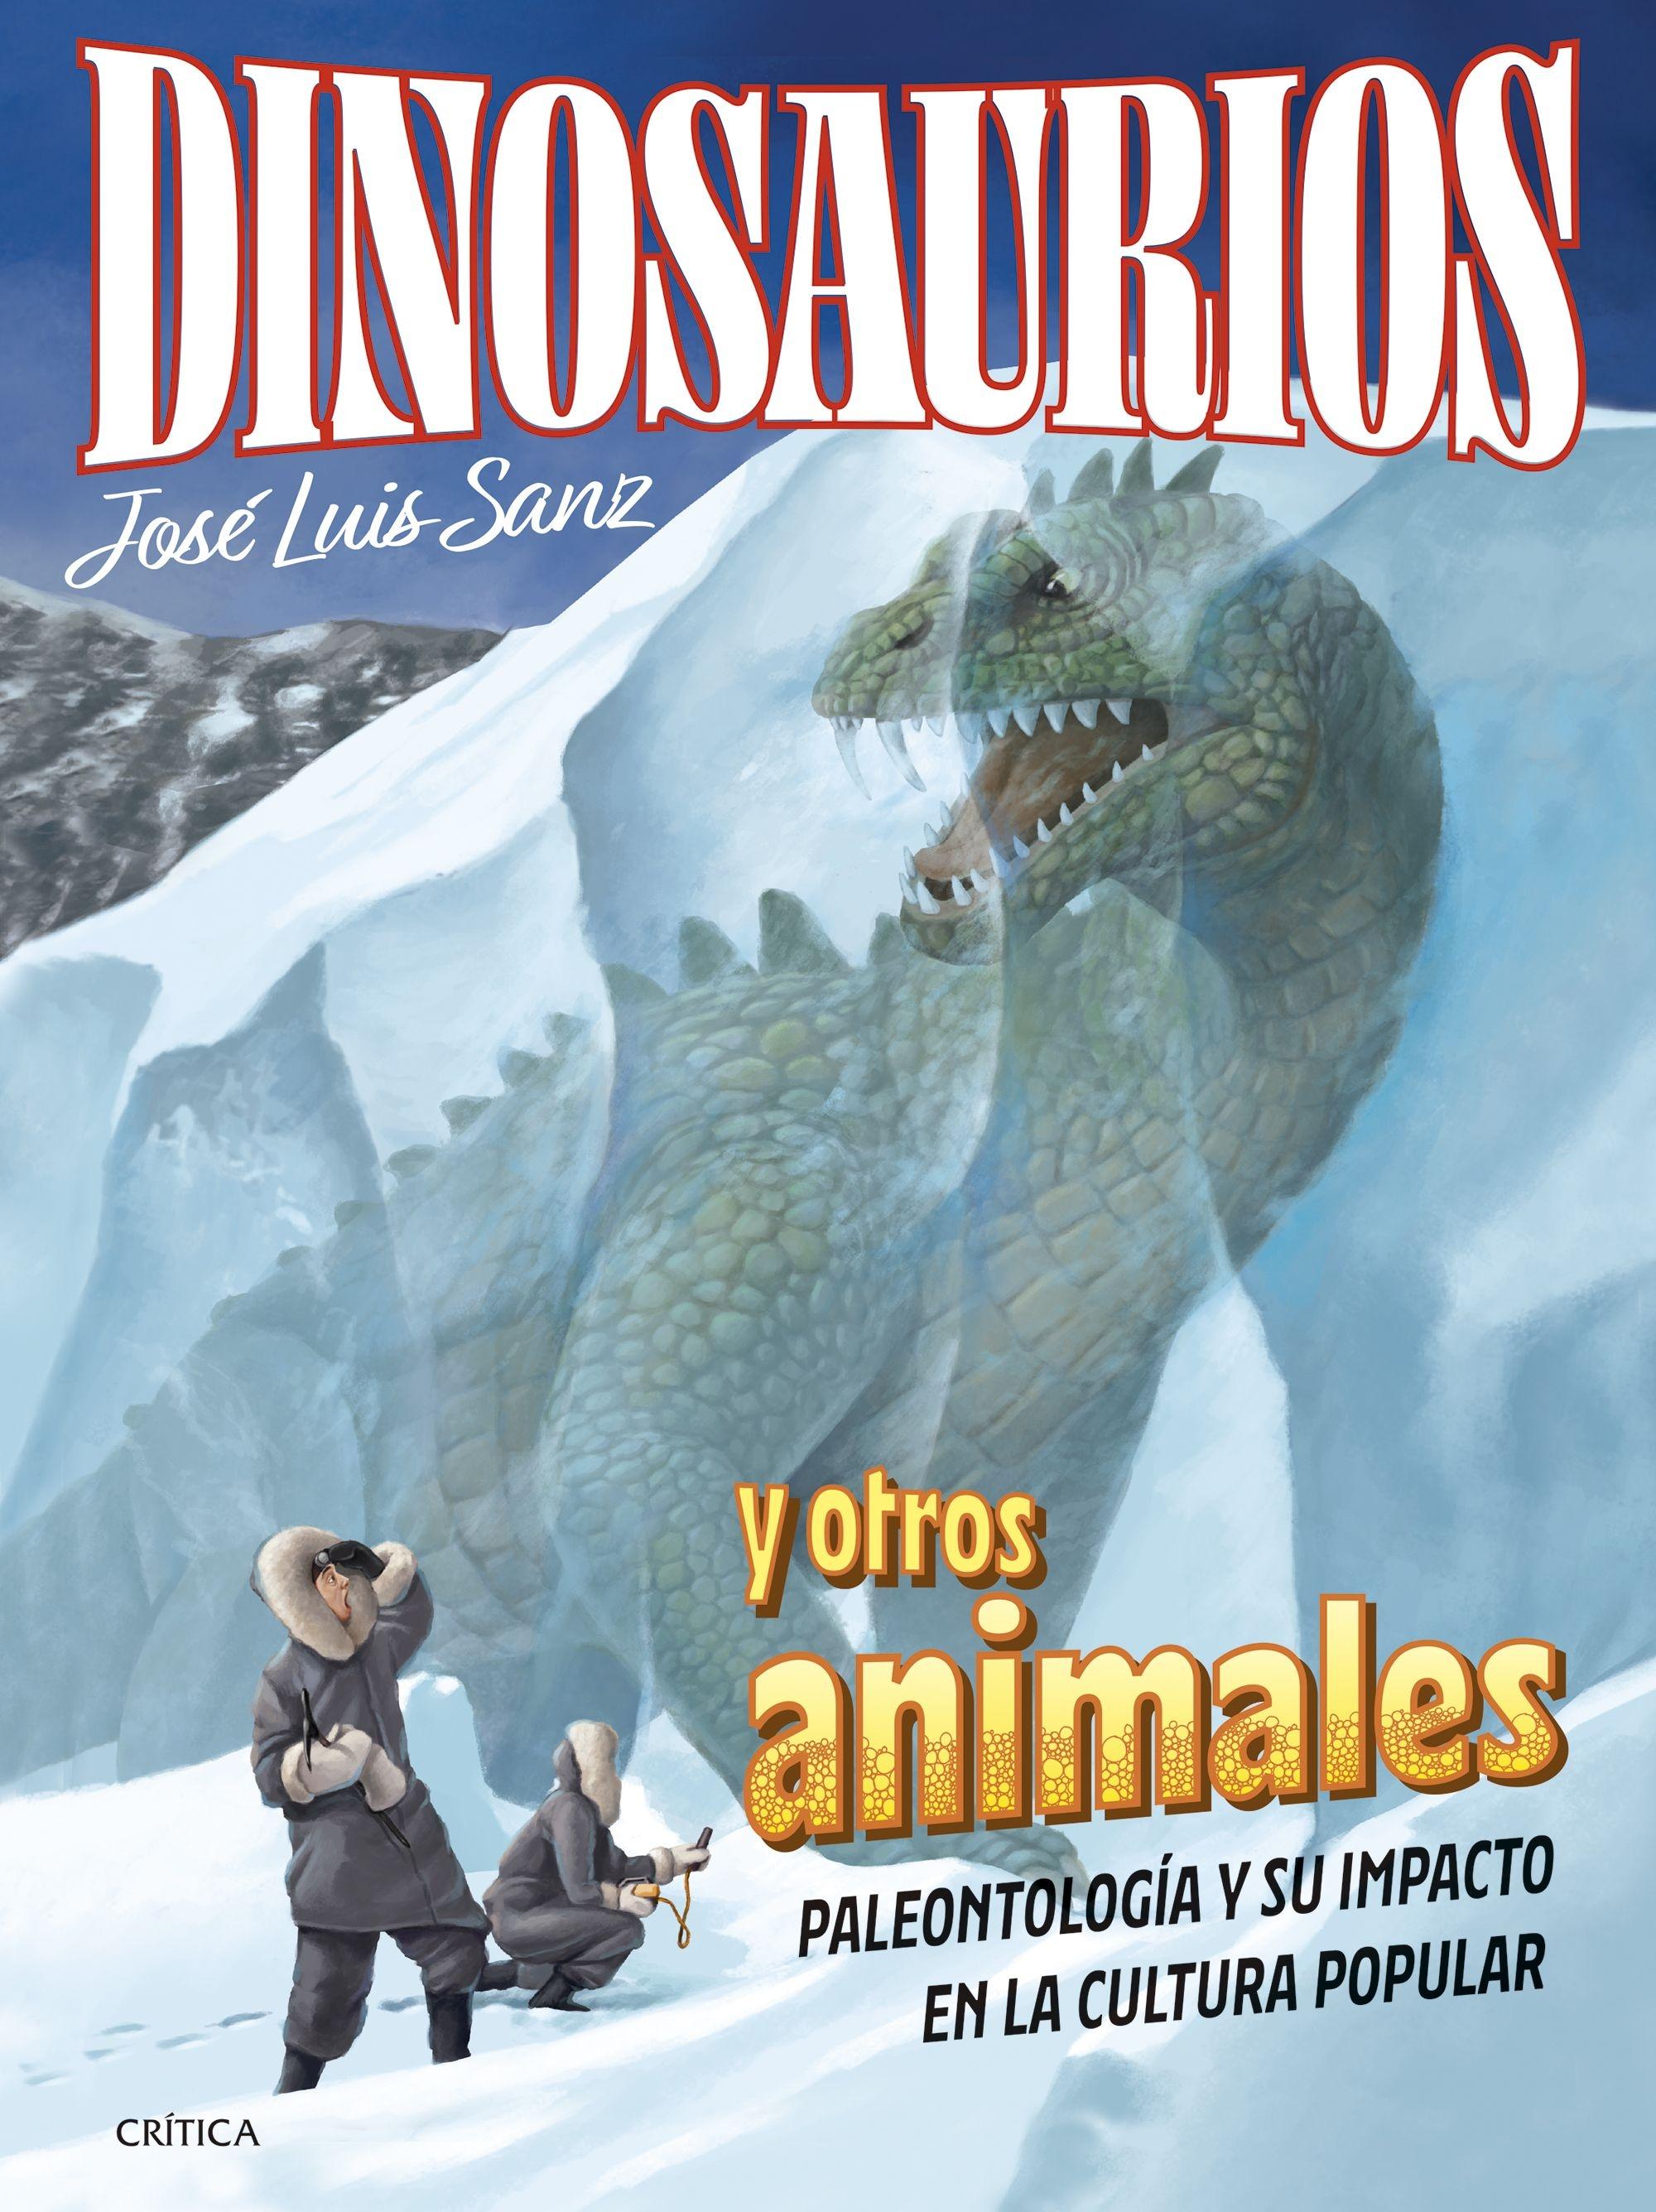 Dinosaurios y Otros Animales "Paleontología y su Impacto en la Cultura Popular"